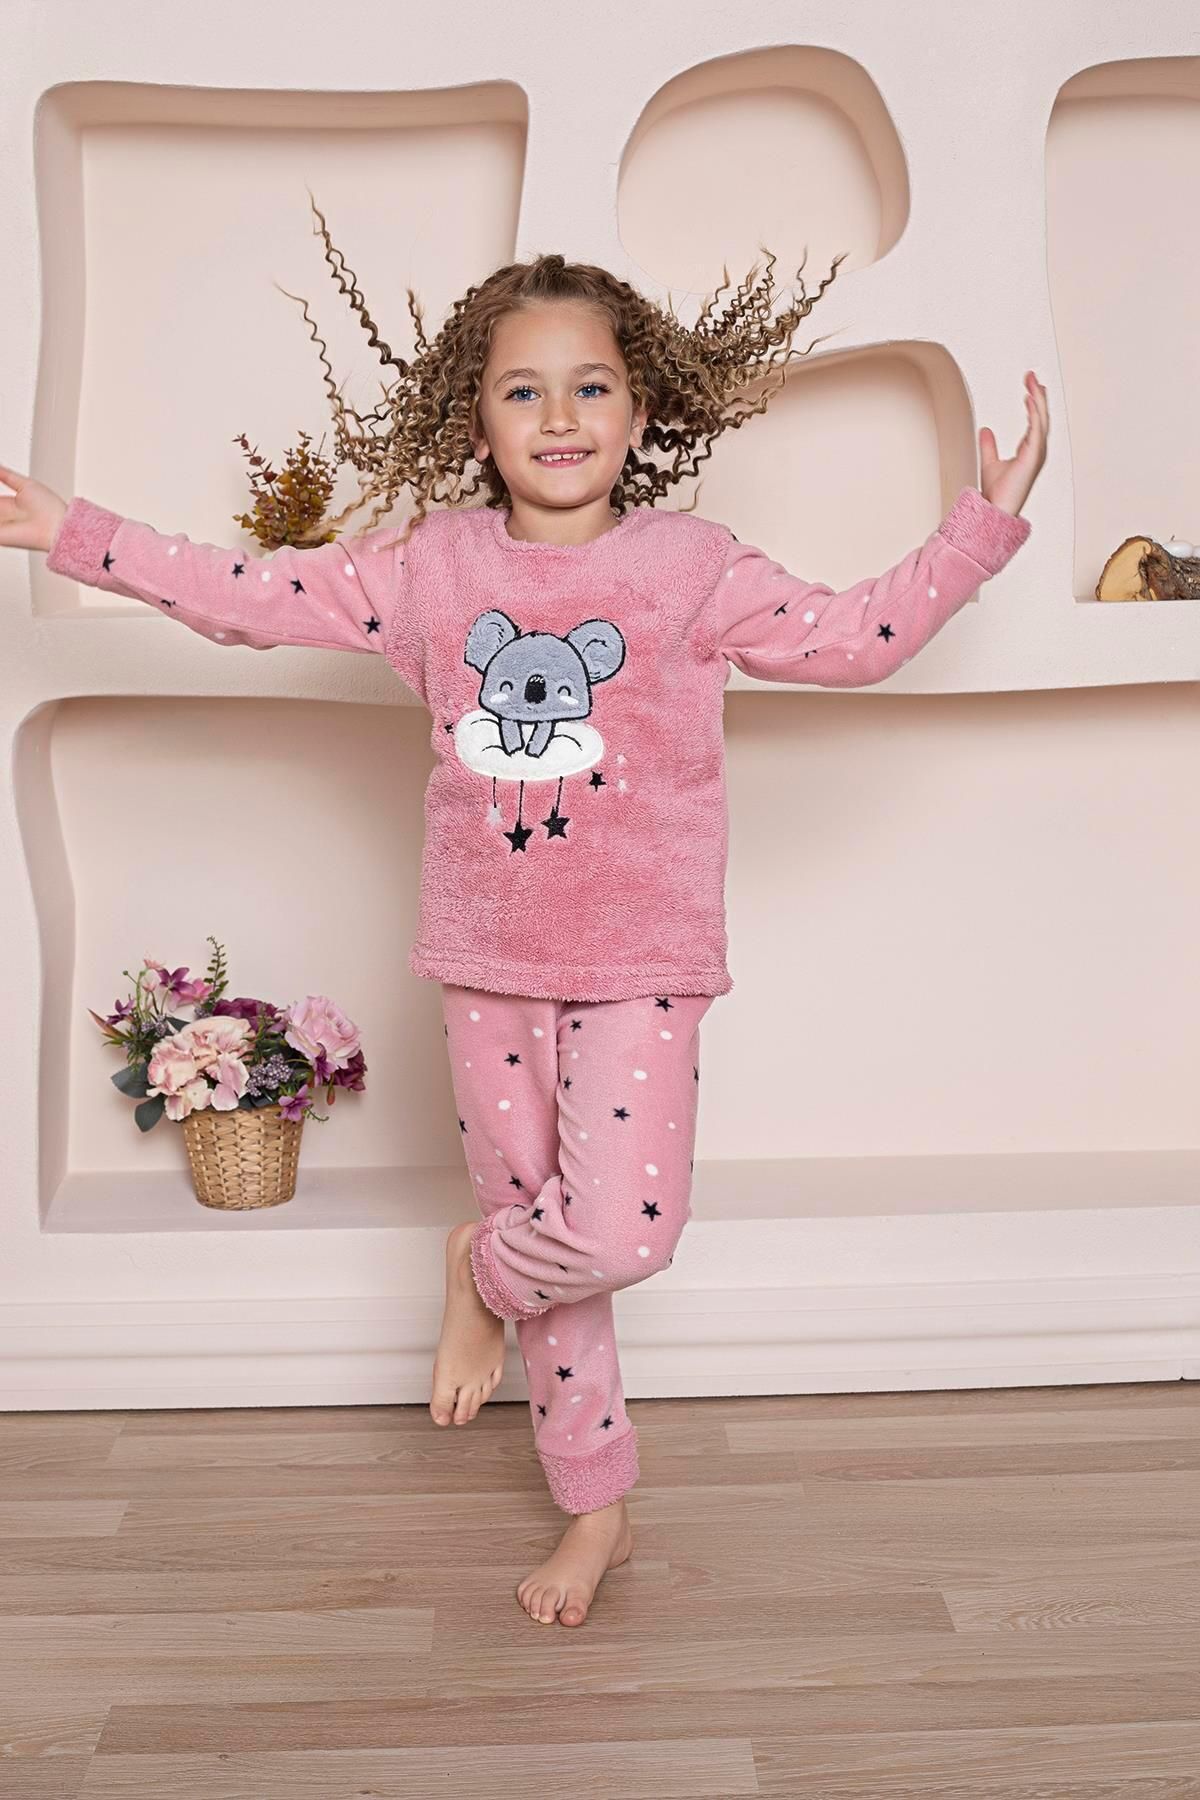 Mutlu City Yeni Sezon Sonbahar/Kış Kız Çocuk Koala Desenli Polar Pijama Takımı 4937